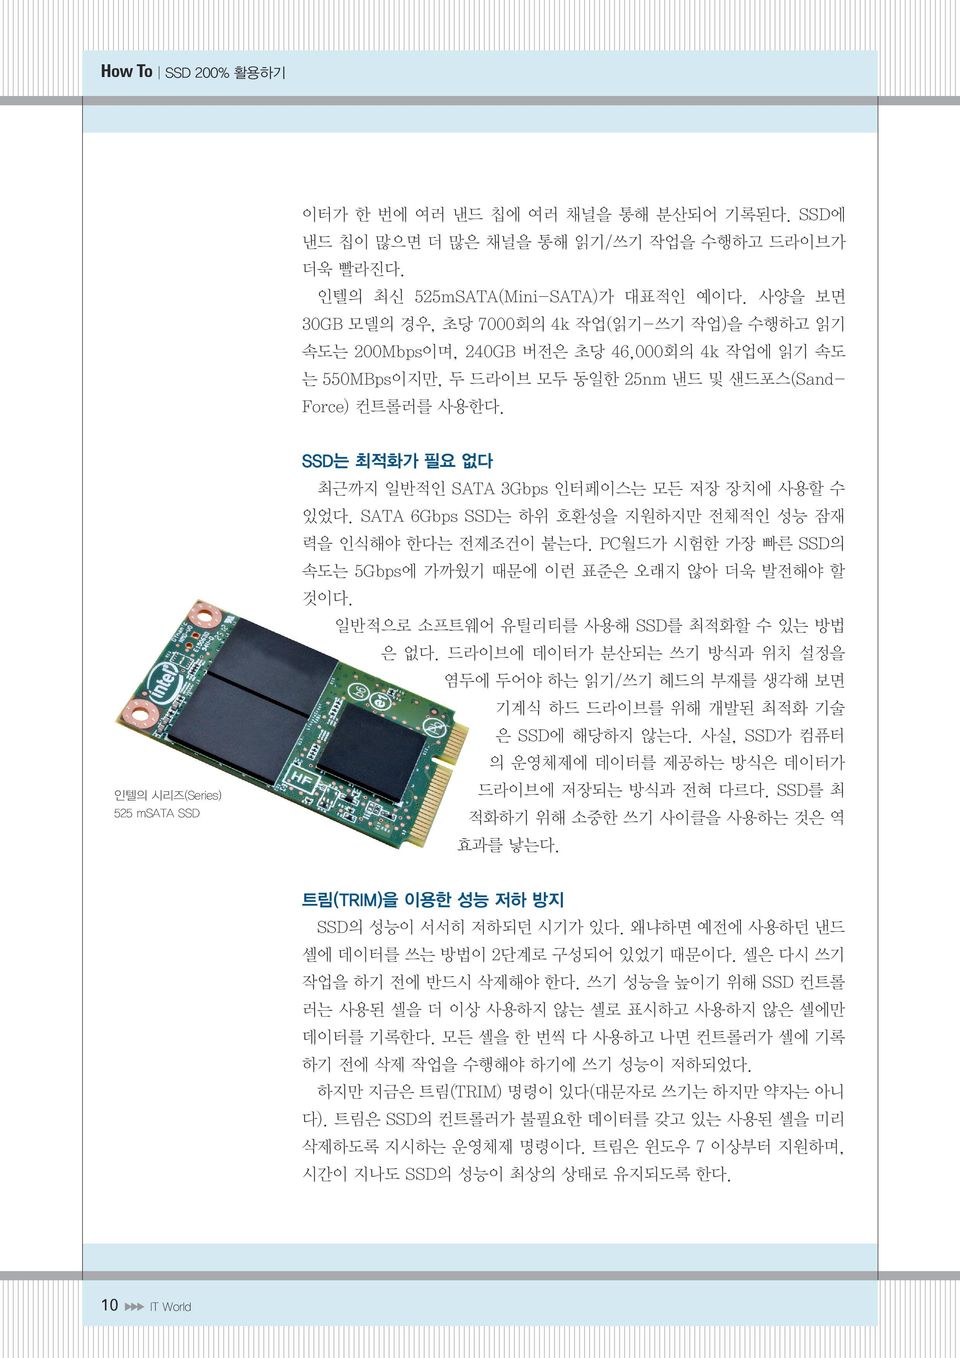 인텔의 시리즈(Series) 525 msata SSD SSD는 최적화가 필요 없다 최근까지 일반적인 SATA 3Gbps 인터페이스는 모든 저장 장치에 사용할 수 있었다. SATA 6Gbps SSD는 하위 호환성을 지원하지만 전체적인 성능 잠재 력을 인식해야 한다는 전제조건이 붙는다.